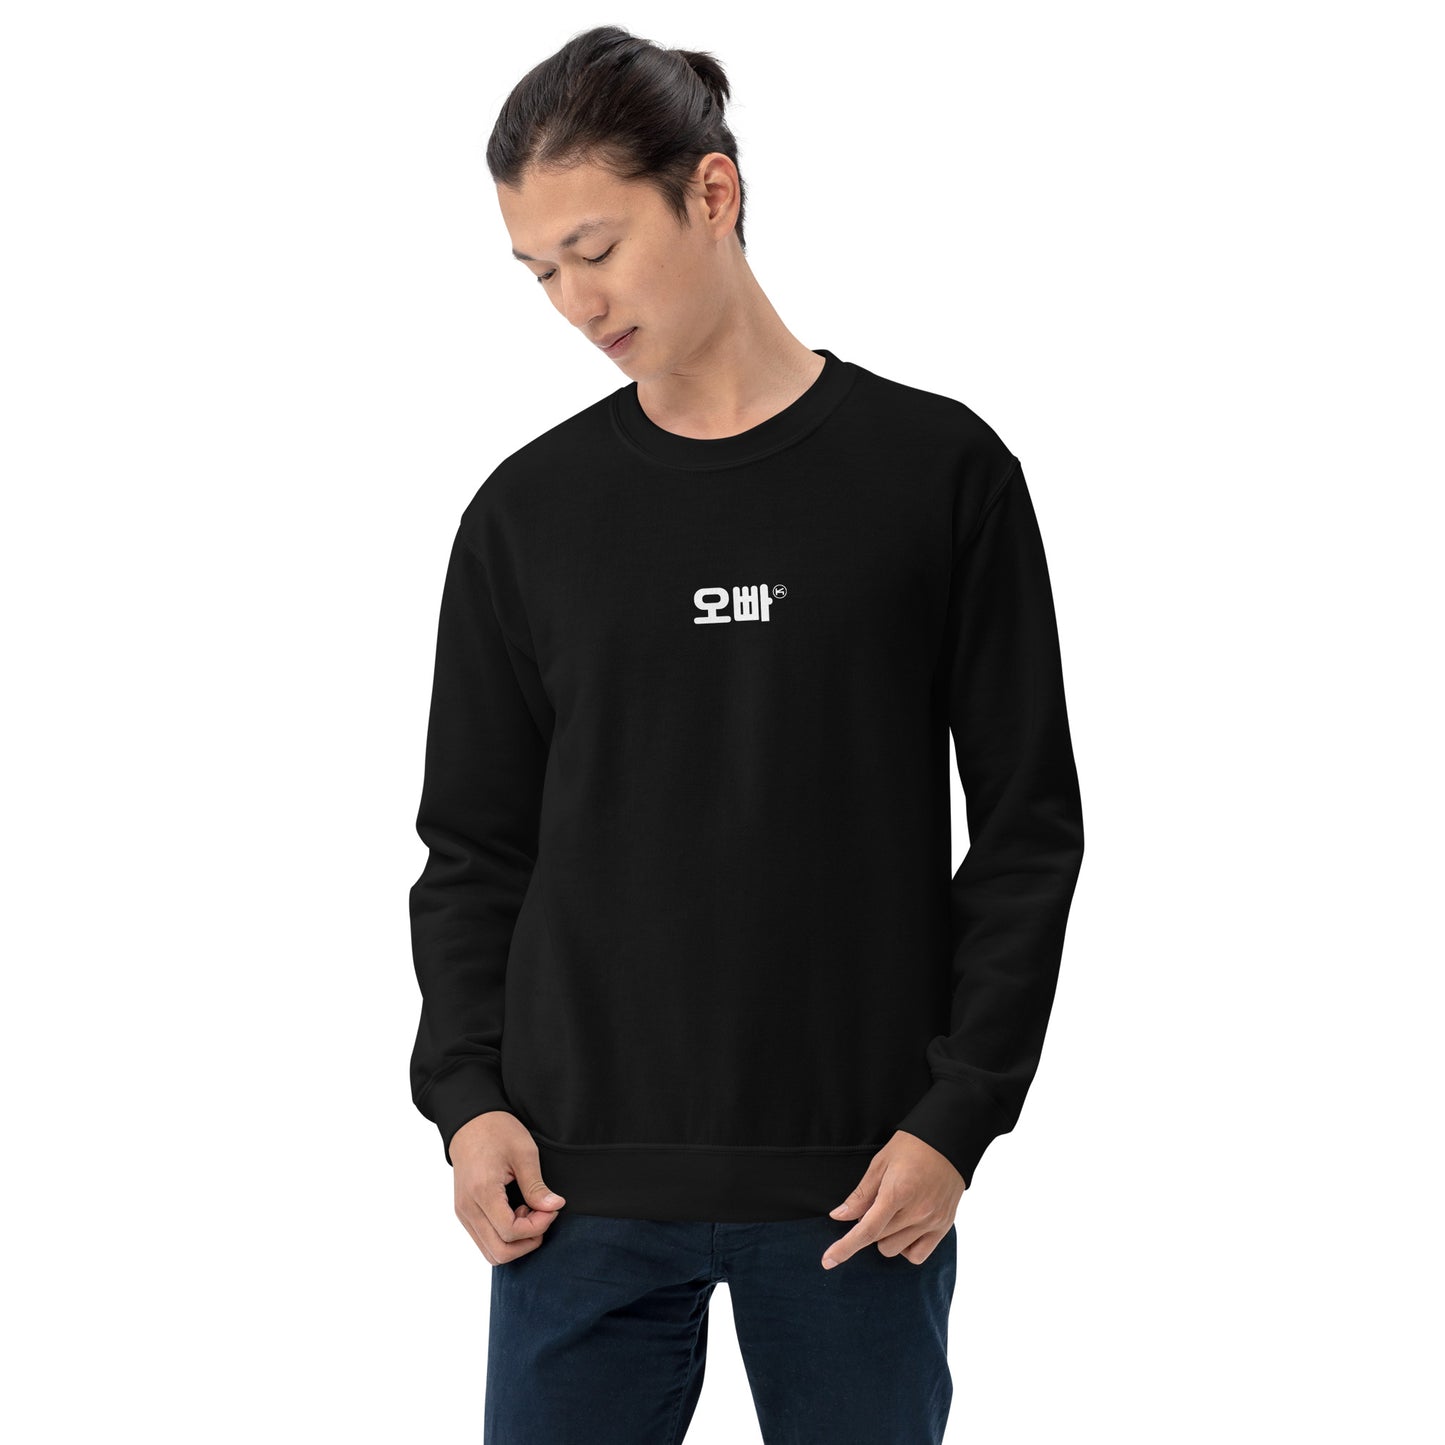 Brother in Korean Hangul Kpop Merch Unisex Sweatshirt